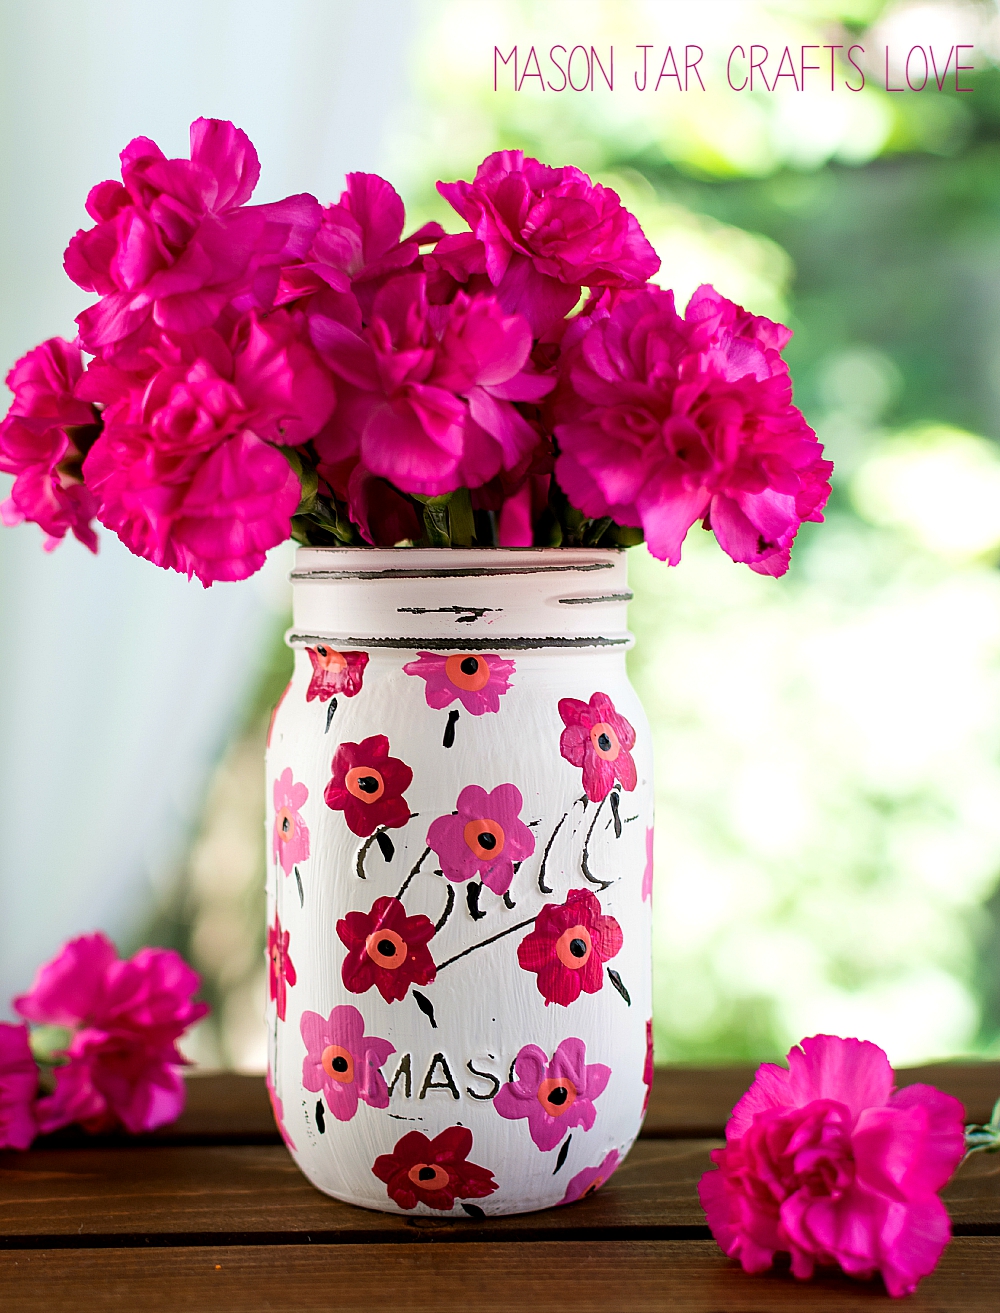 Mason Jar Crafts: Painted Pink Floral Marimekko Inspired Pattern